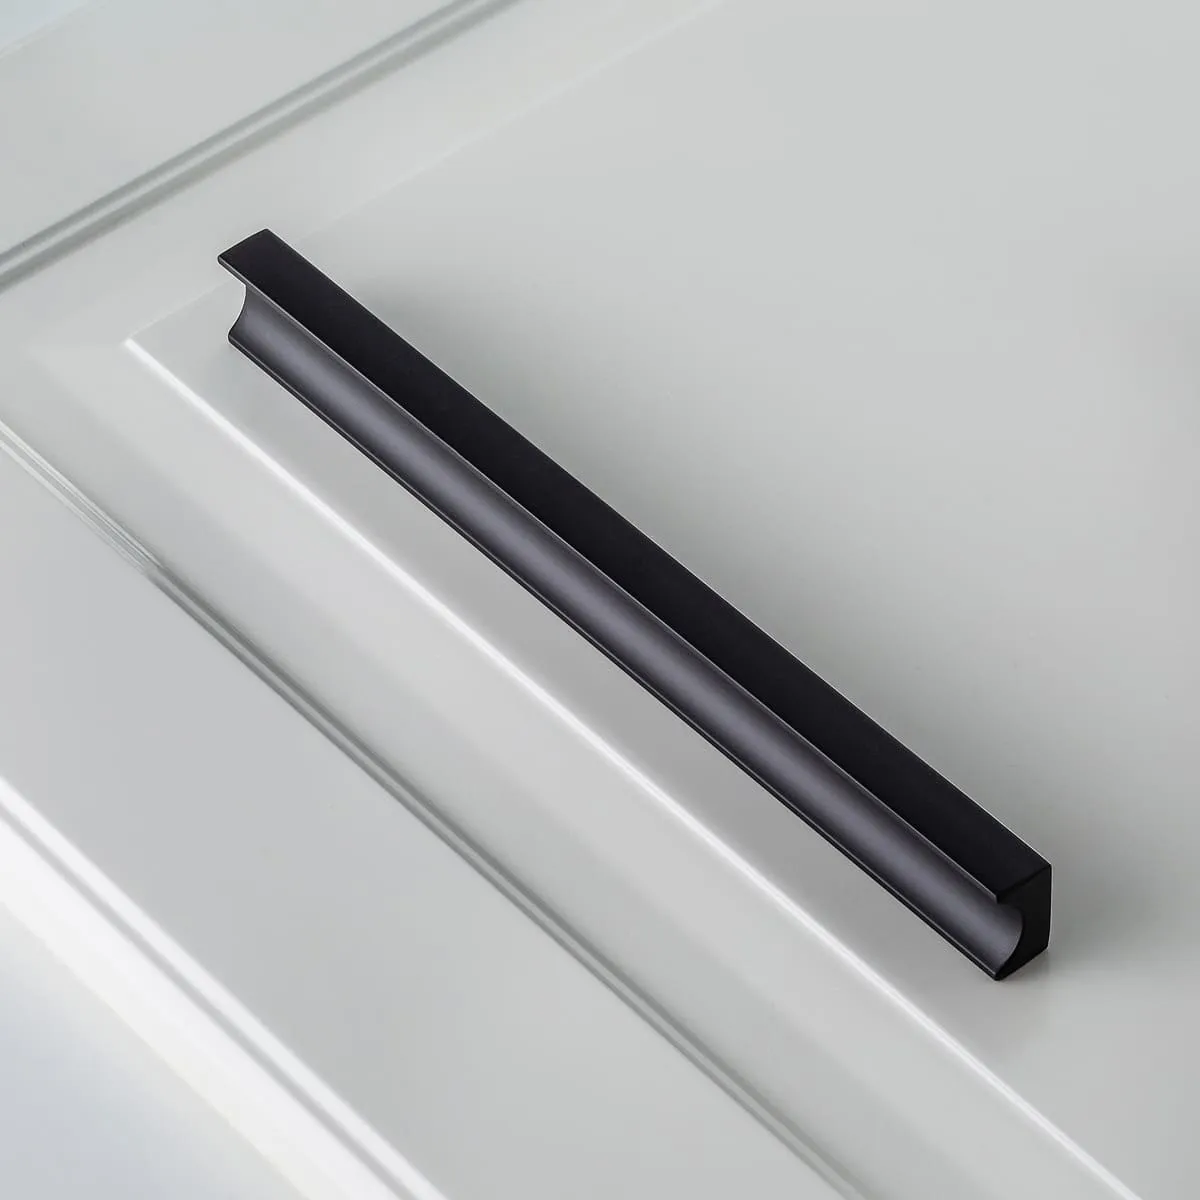 Ручка мебельная алюминиевая GROOVE 160мм/190мм, черный матовый GTV UA-GROOVE-160-20M 26132 Ручка мебельная алюминиевая GROOVE 160мм/190мм, черный матовый - фото 4